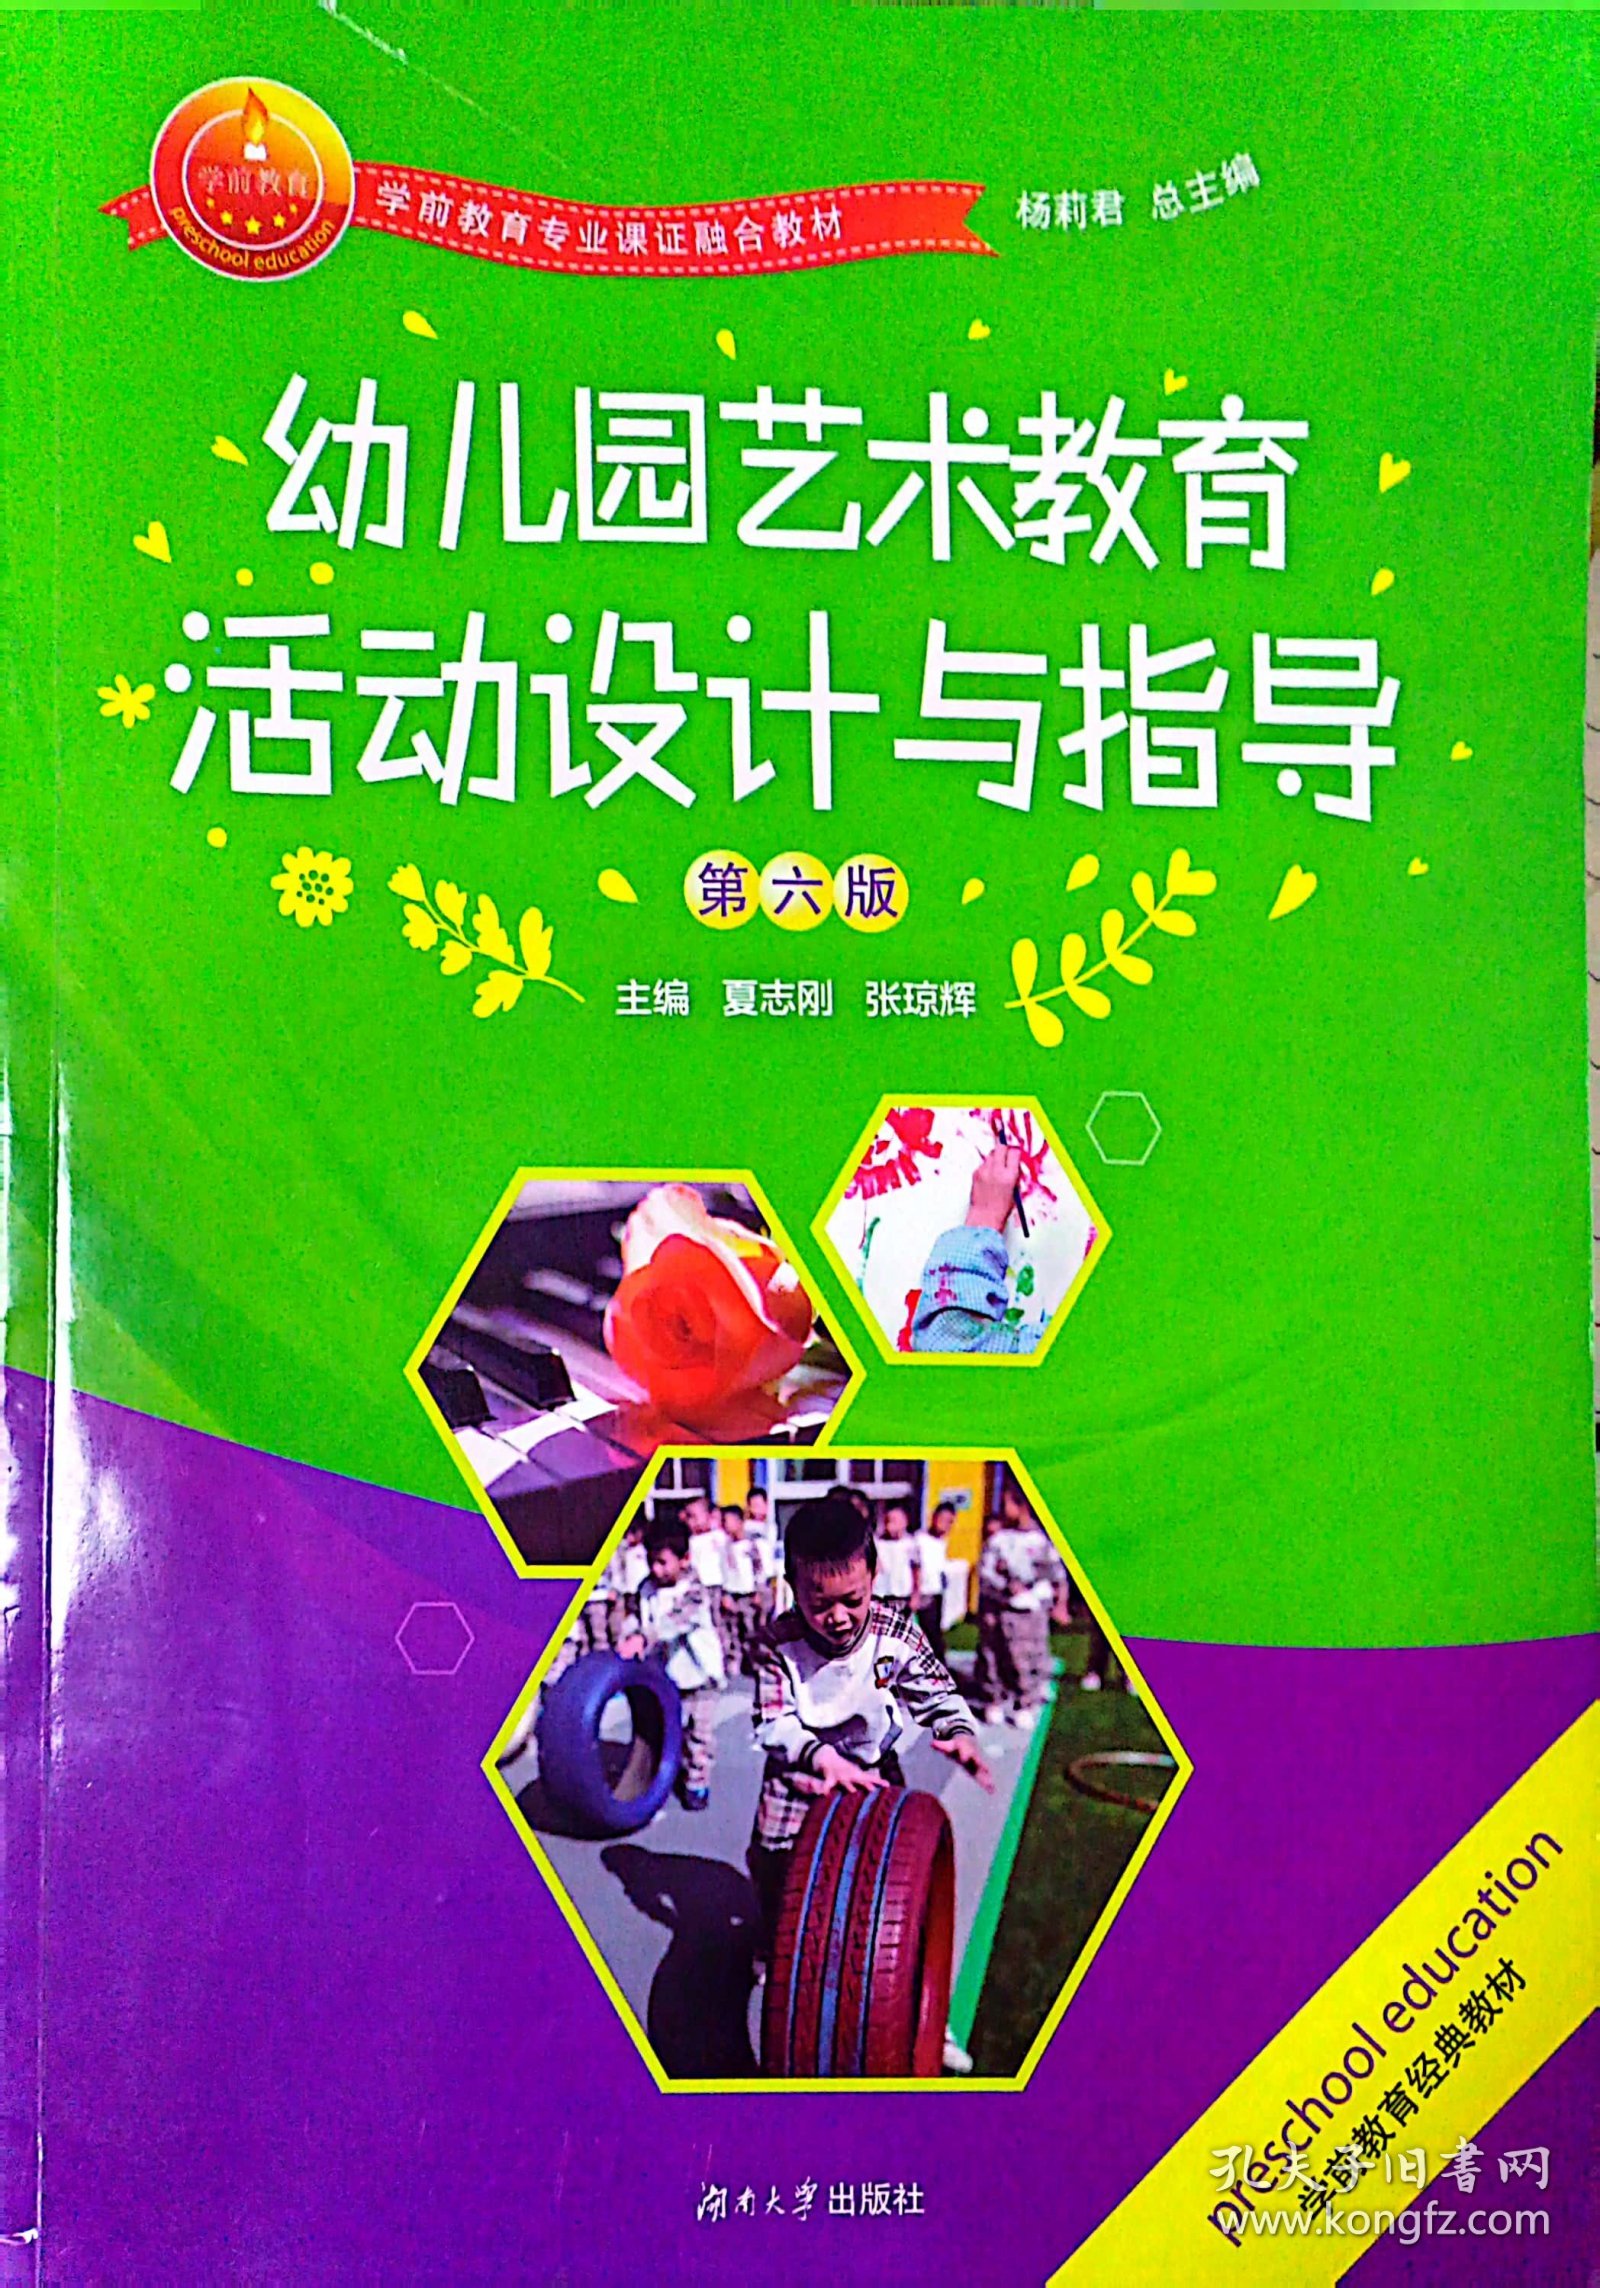 幼儿园艺术教育活动设计与指导(第六版第6版） 夏志刚 张琼辉 湖南大学出版社 9787566713261 正版旧书